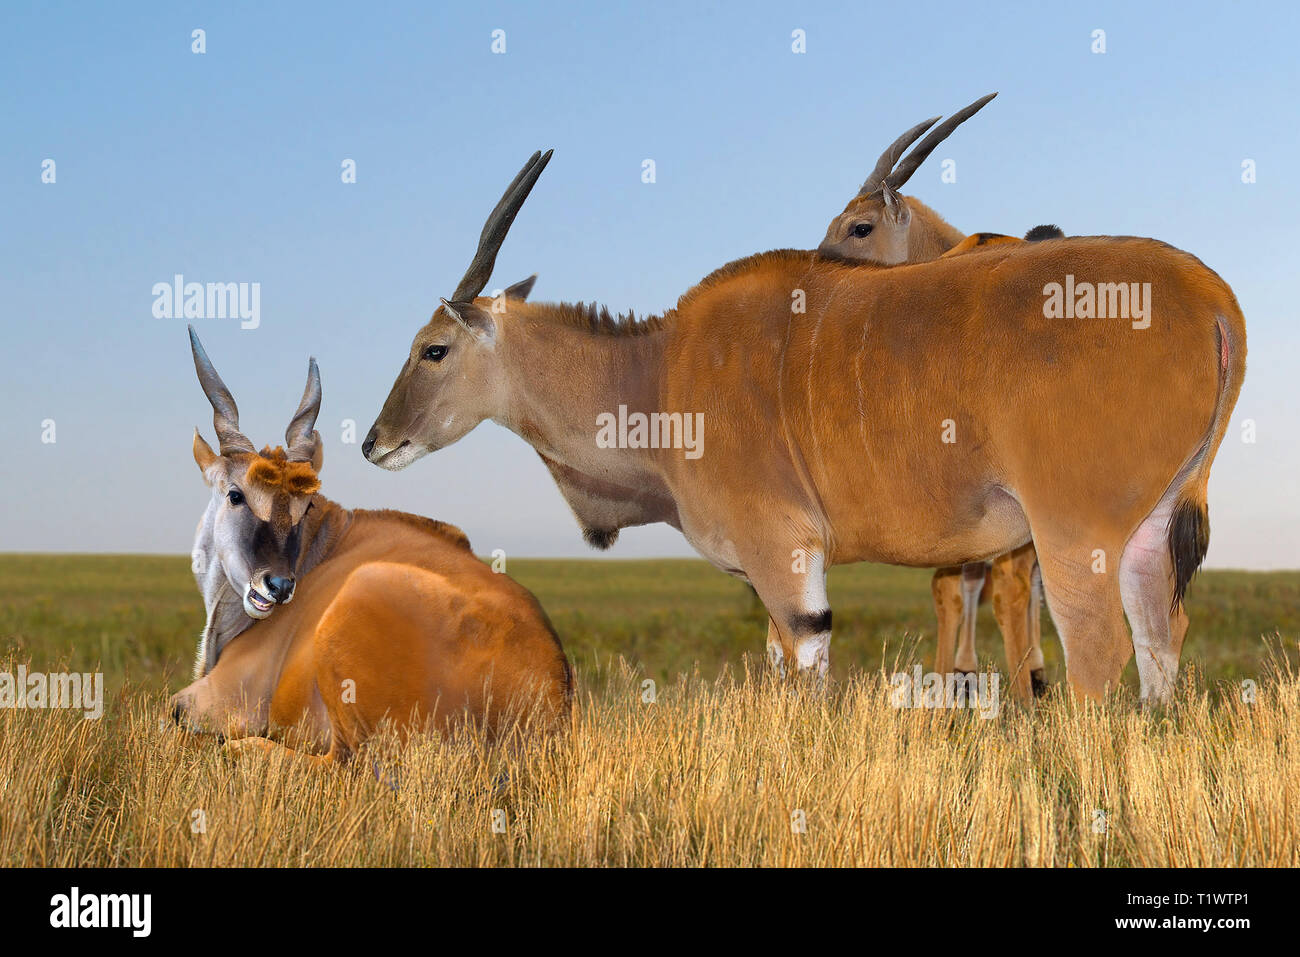 Groupe d'antilopes de Cannes (Taurotragus oryx) sur un pâturage dans la réserve Askania-Nova. L'Europe. L'Ukraine. Région de Kherson. Réserver. format horizontal. Banque D'Images